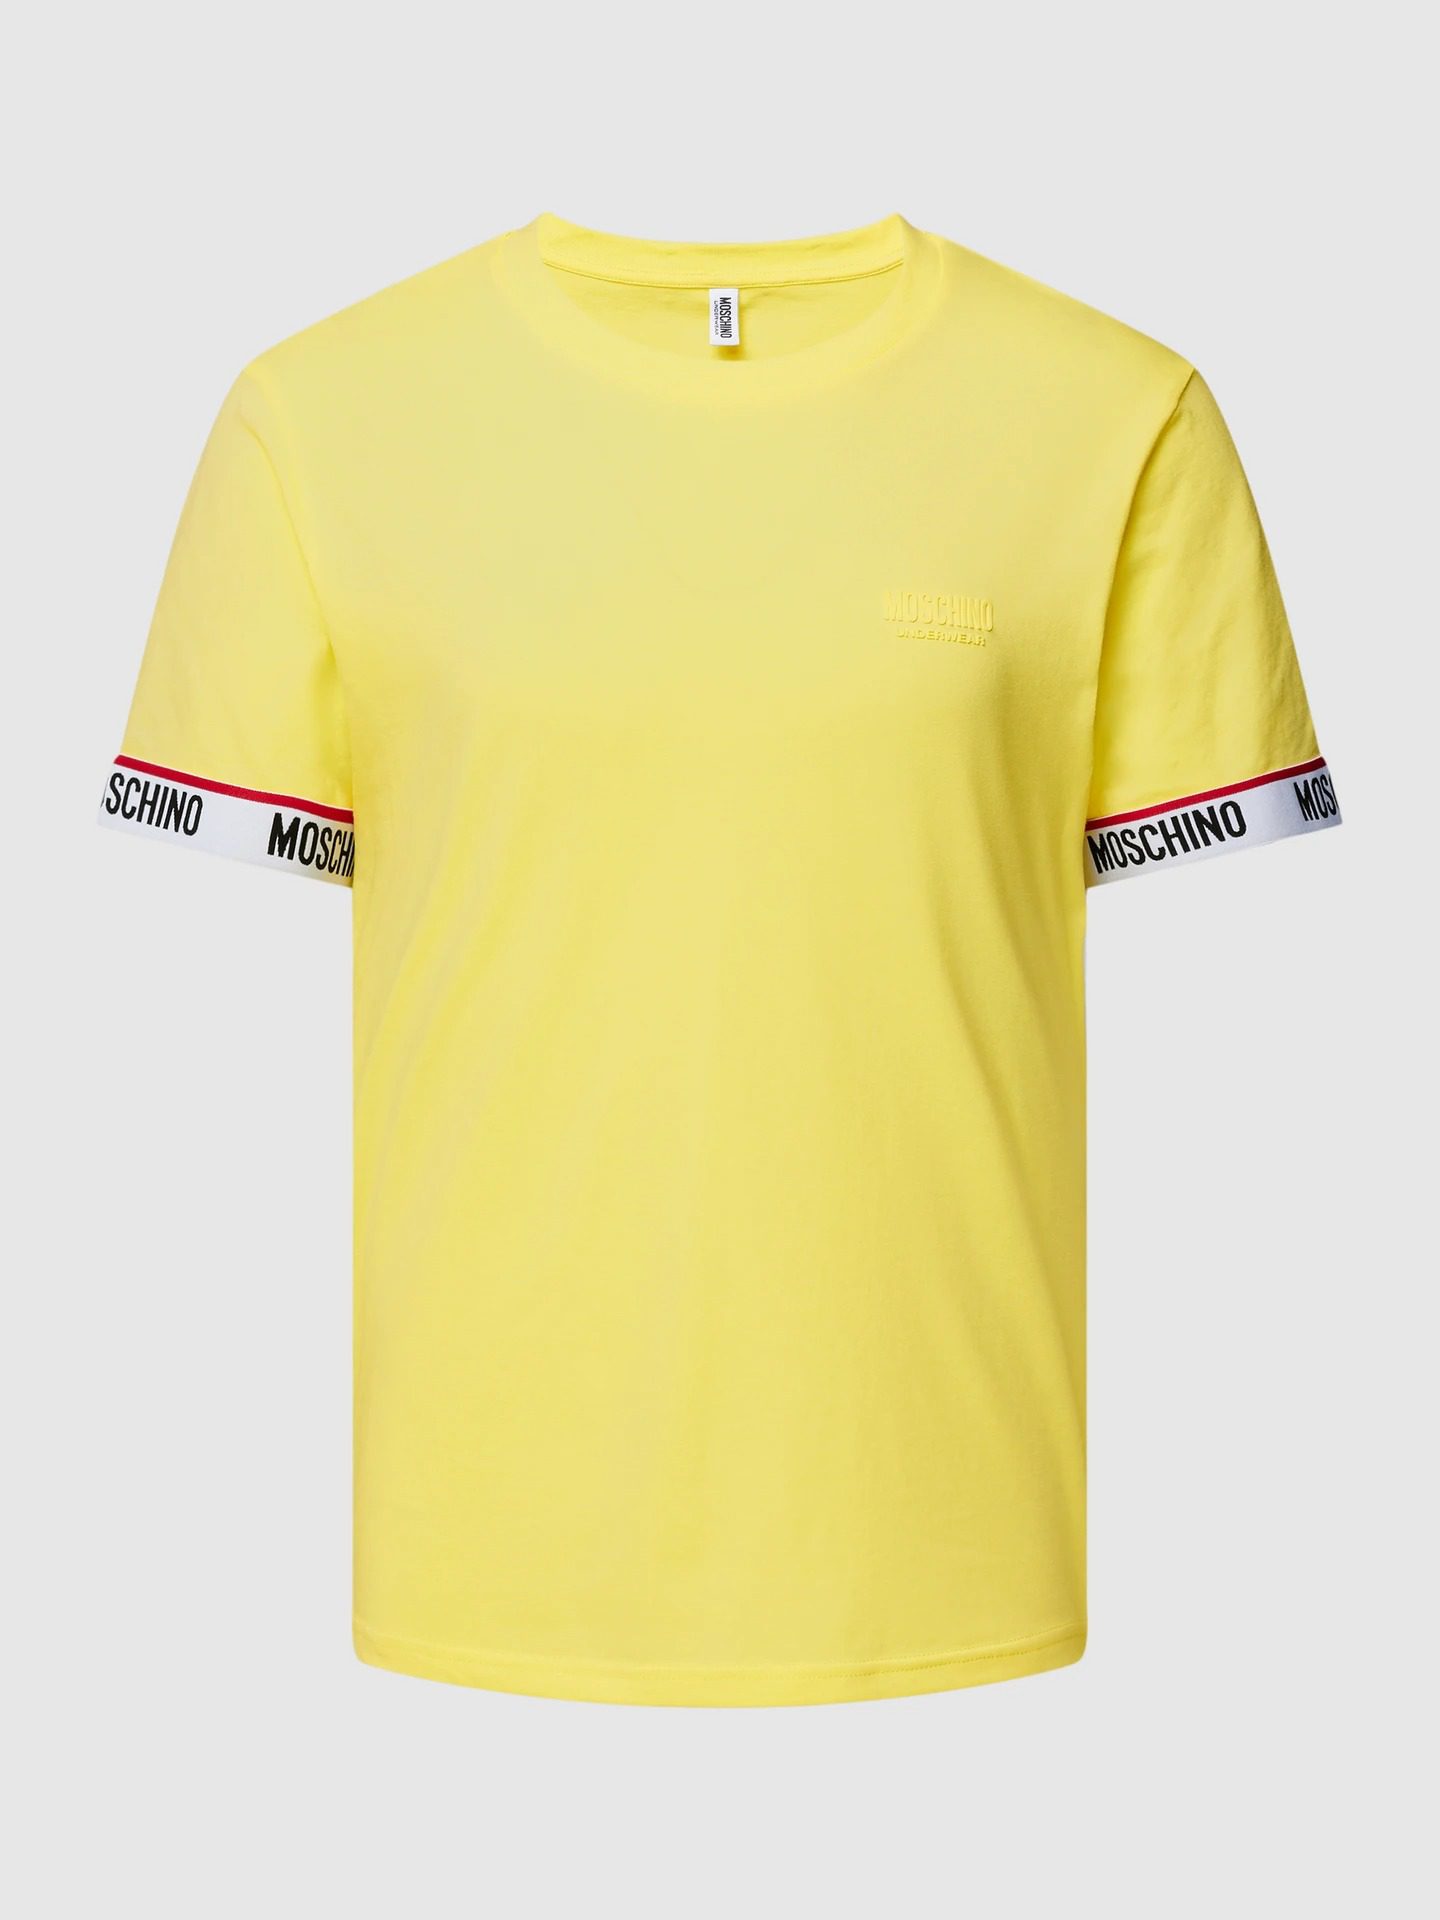 Ανδρική Μπλούζα MOSCHINO V07824305-0021 Κίτρινη